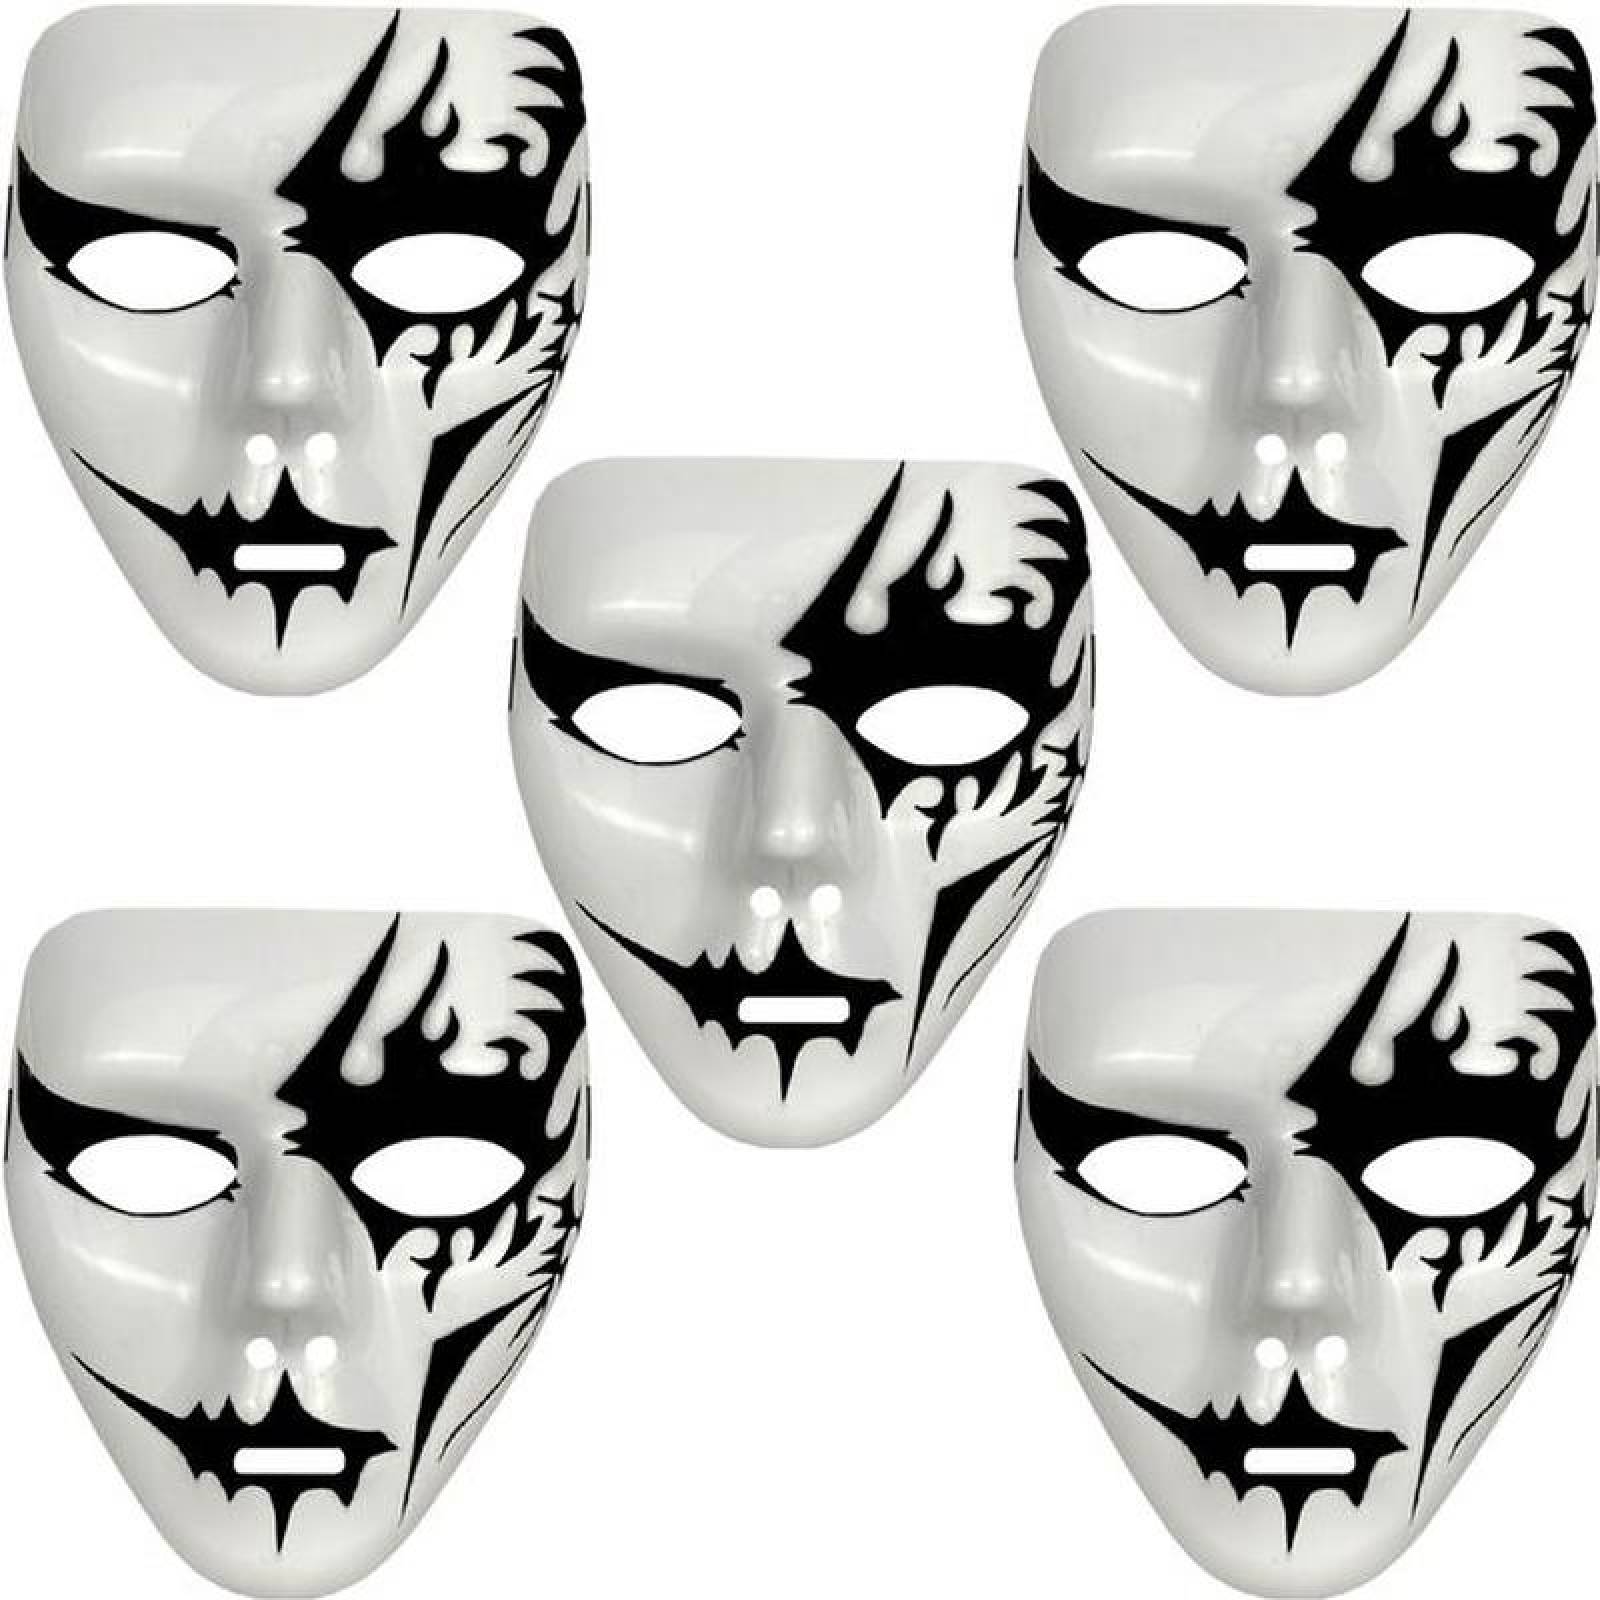 Accesorio para disfraz de máscara de plástico fantasma blanco, 1 unidad,  duradero, misterioso y elegante, ideal para Halloween y fiesta de máscaras